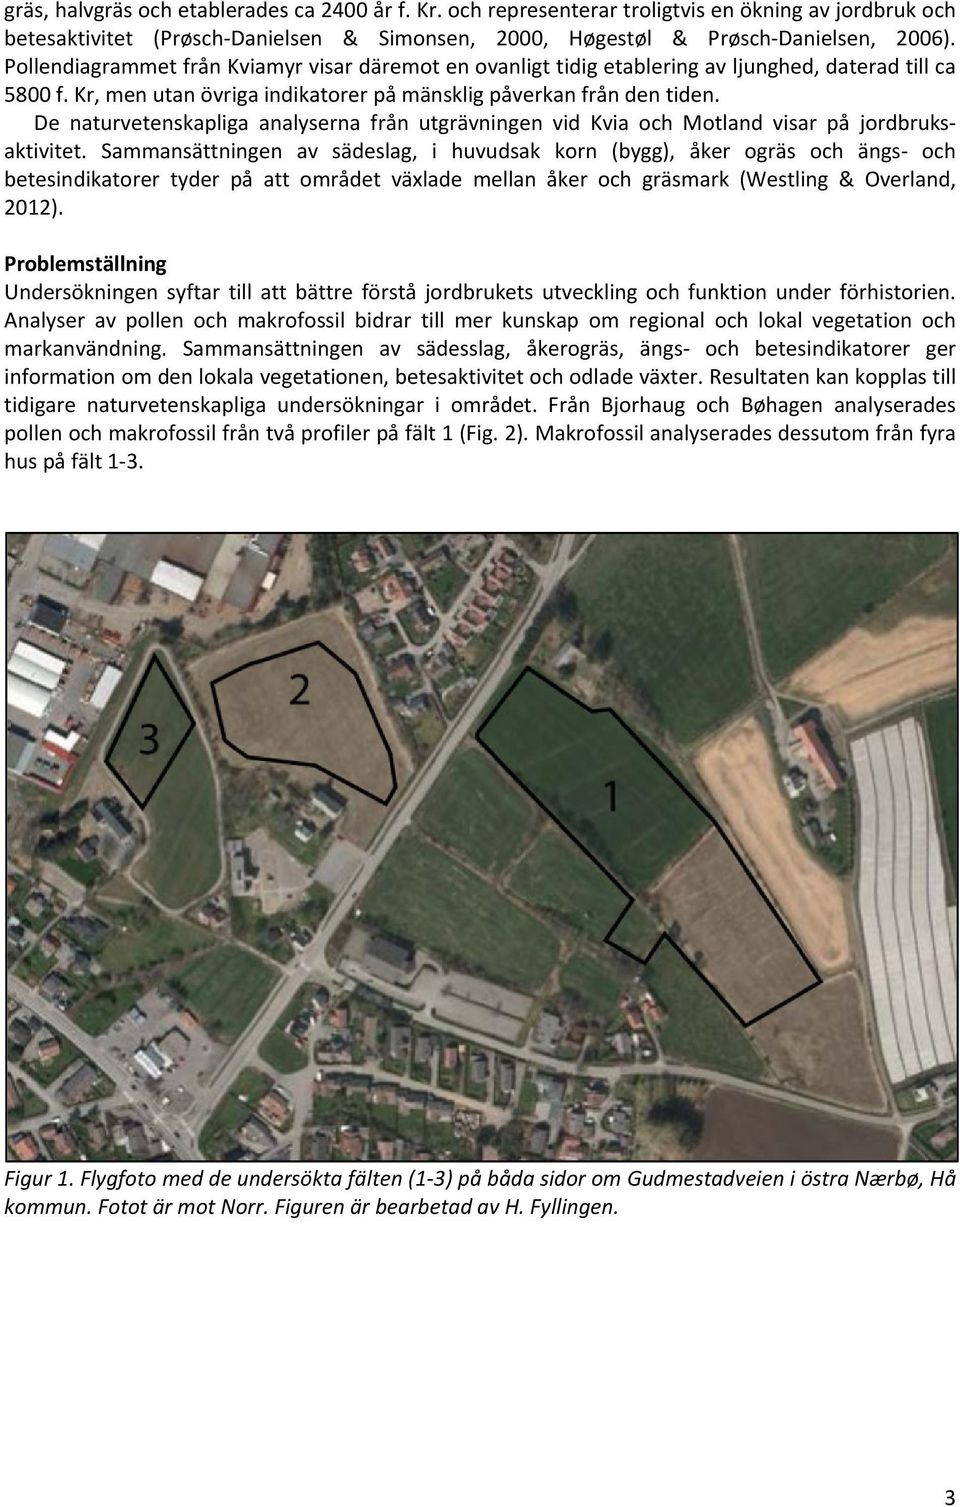 De naturvetenskapliga analyserna från utgrävningen vid Kvia och Motland visar på jordbruksaktivitet.